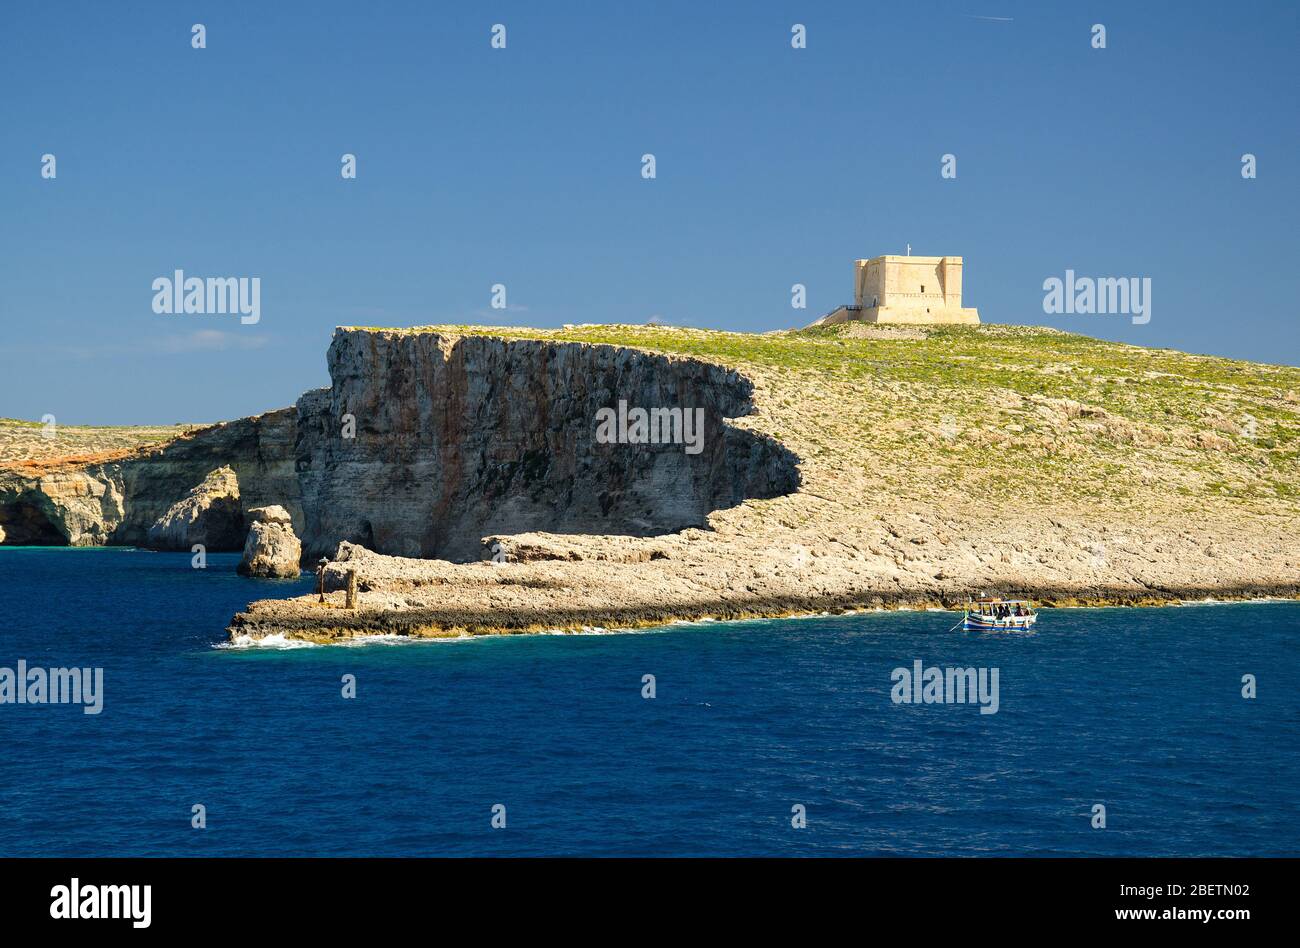 Torre di Santa Maria torre di avvistamento based sull'isola di Comino o Kemmuna dell'arcipelago maltese nel Mar Mediterraneo e barca, Malta Foto Stock